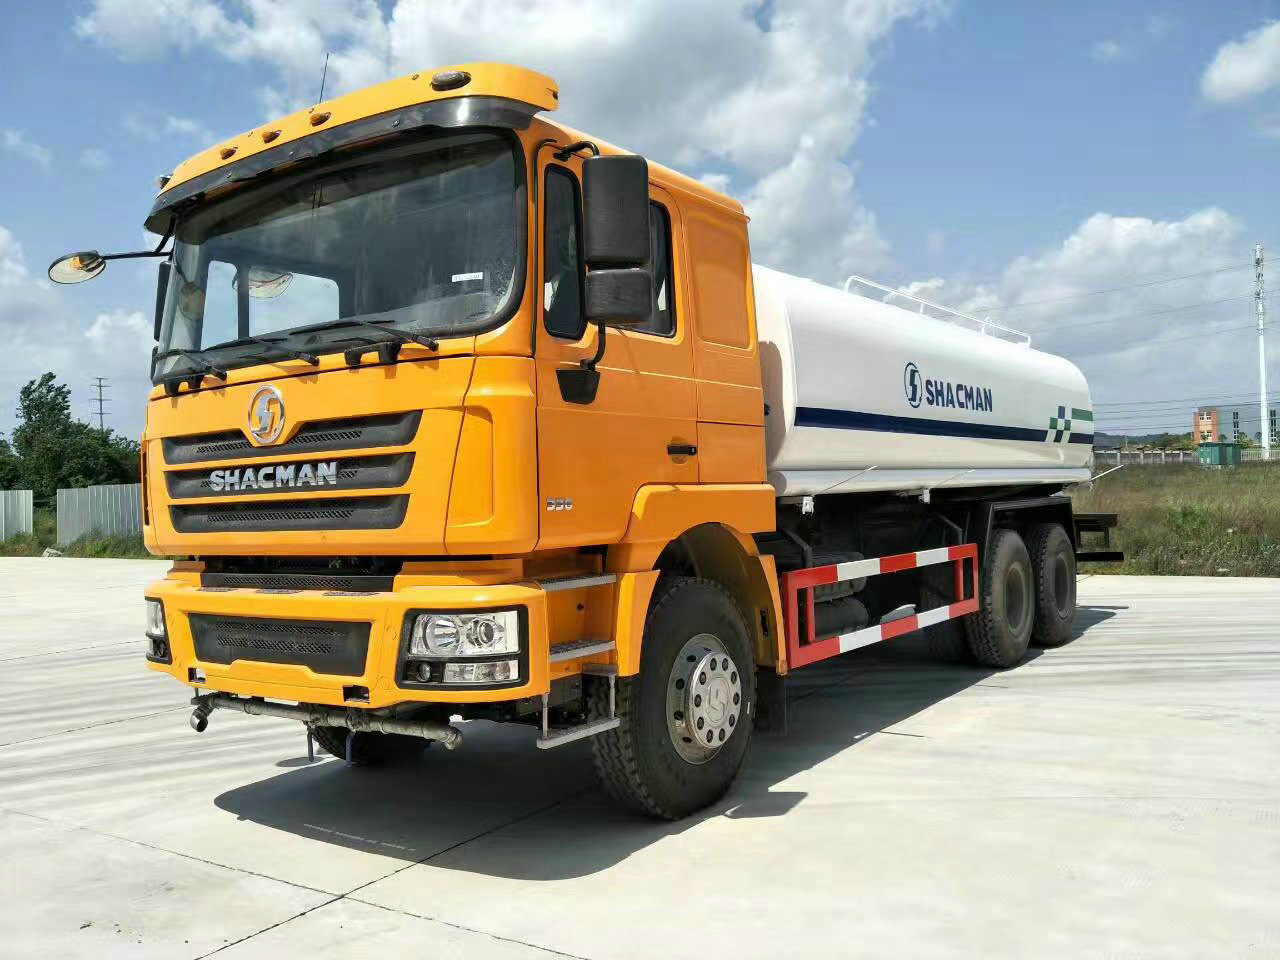 Shacman F3000 6X4 20,000 Liters Water Sprinkler Truck